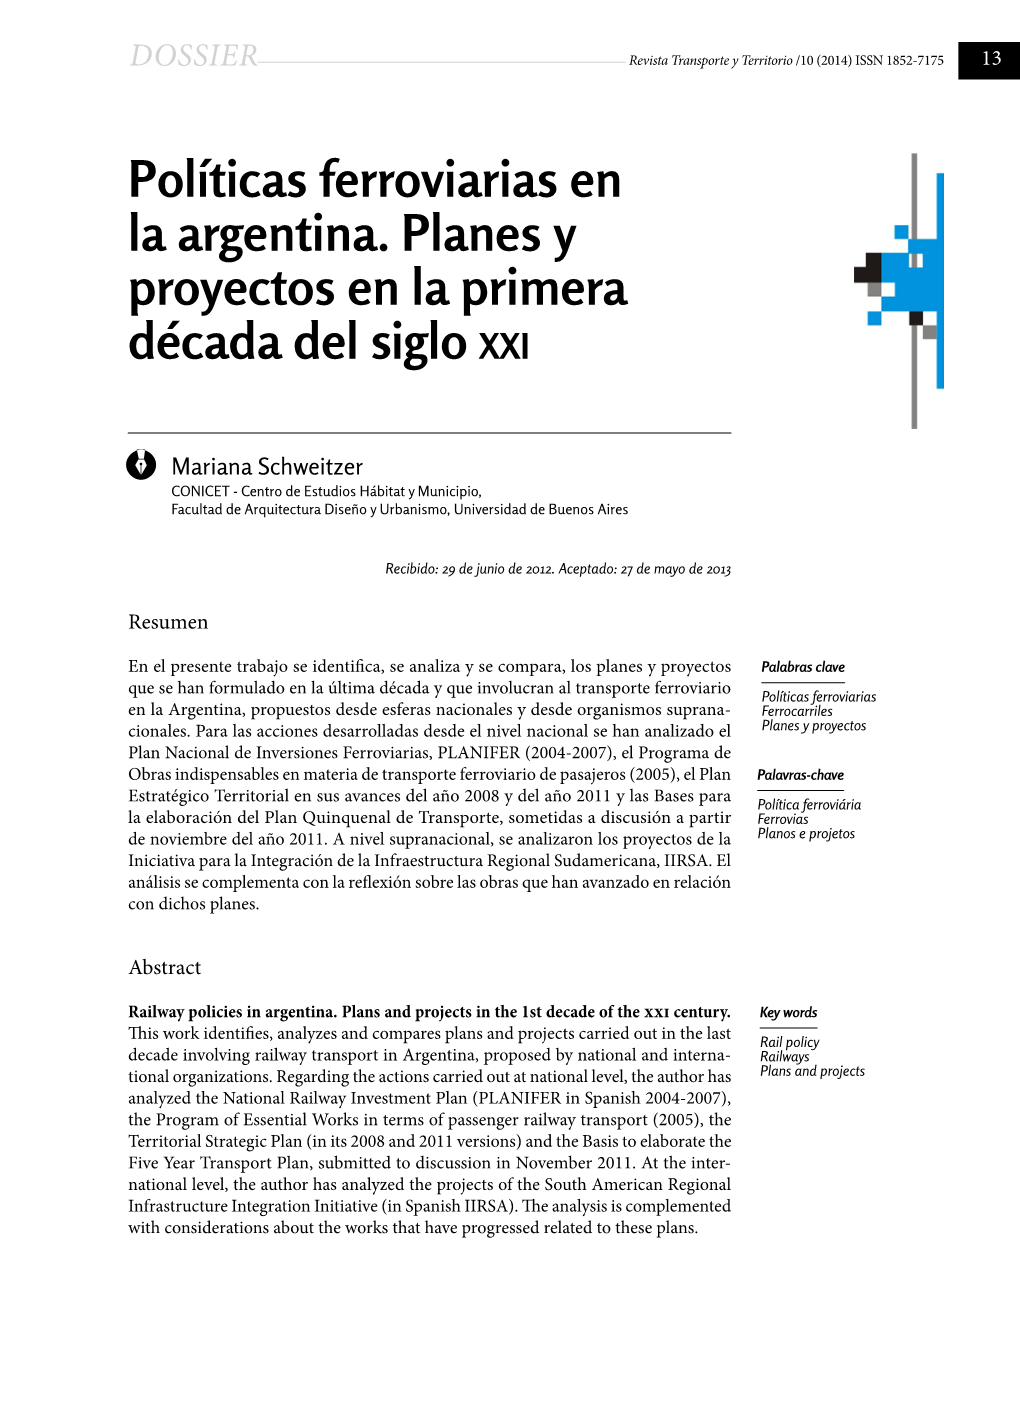 Políticas Ferroviarias En La Argentina. Planes Y Proyectos En La Primera Década Del Siglo Xxi